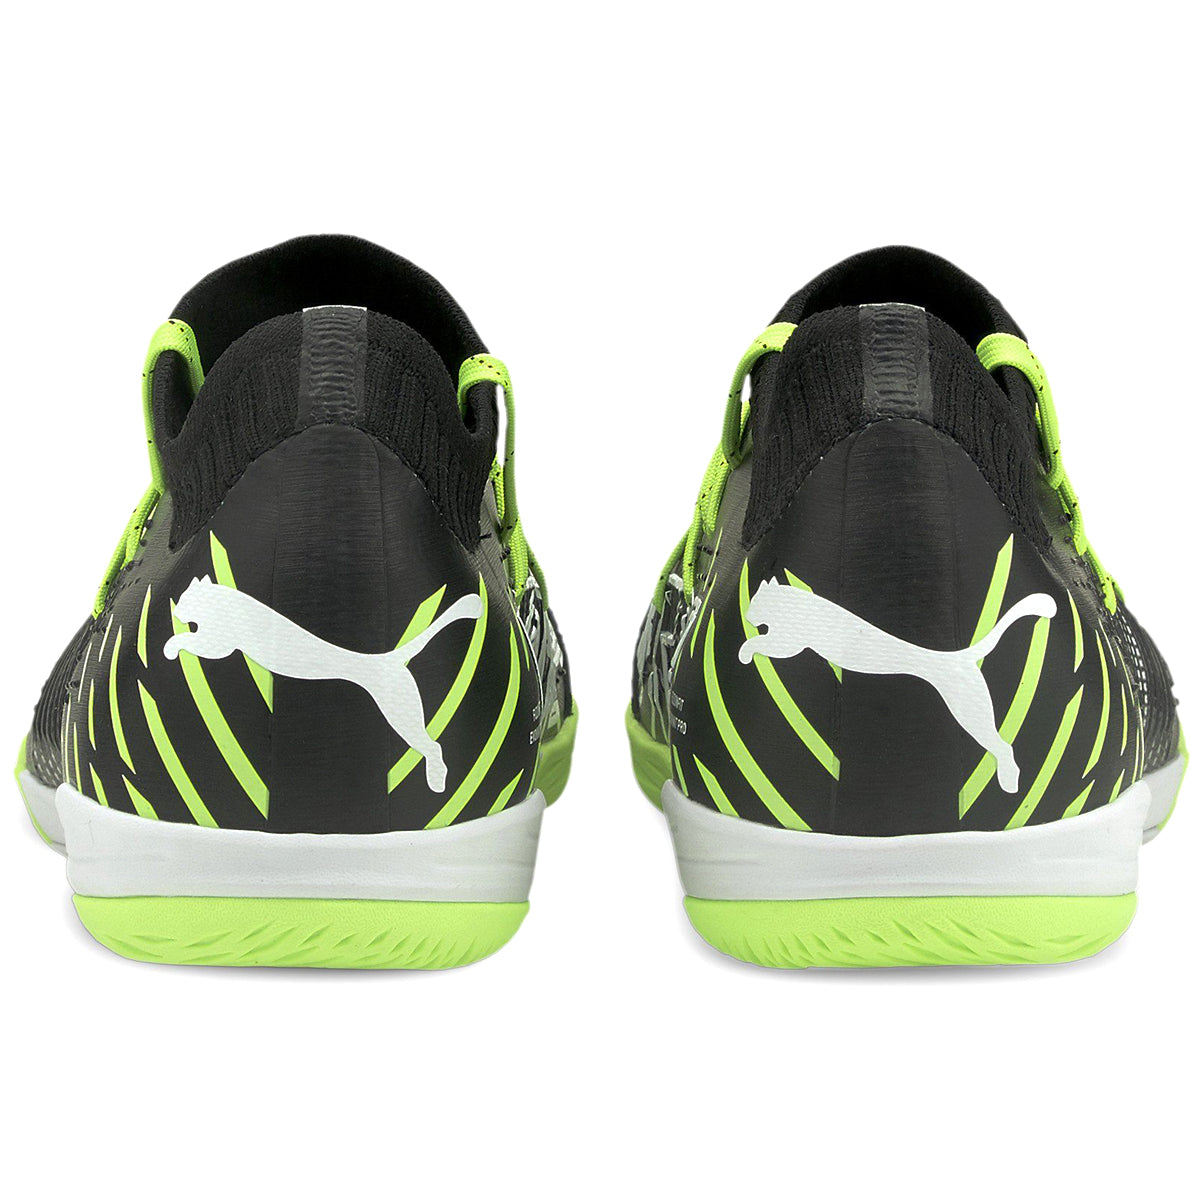 PUMA Men's Future Z 1.2 Pro Court Soccer Shoe | 10649902 Soccer Shoes Puma 